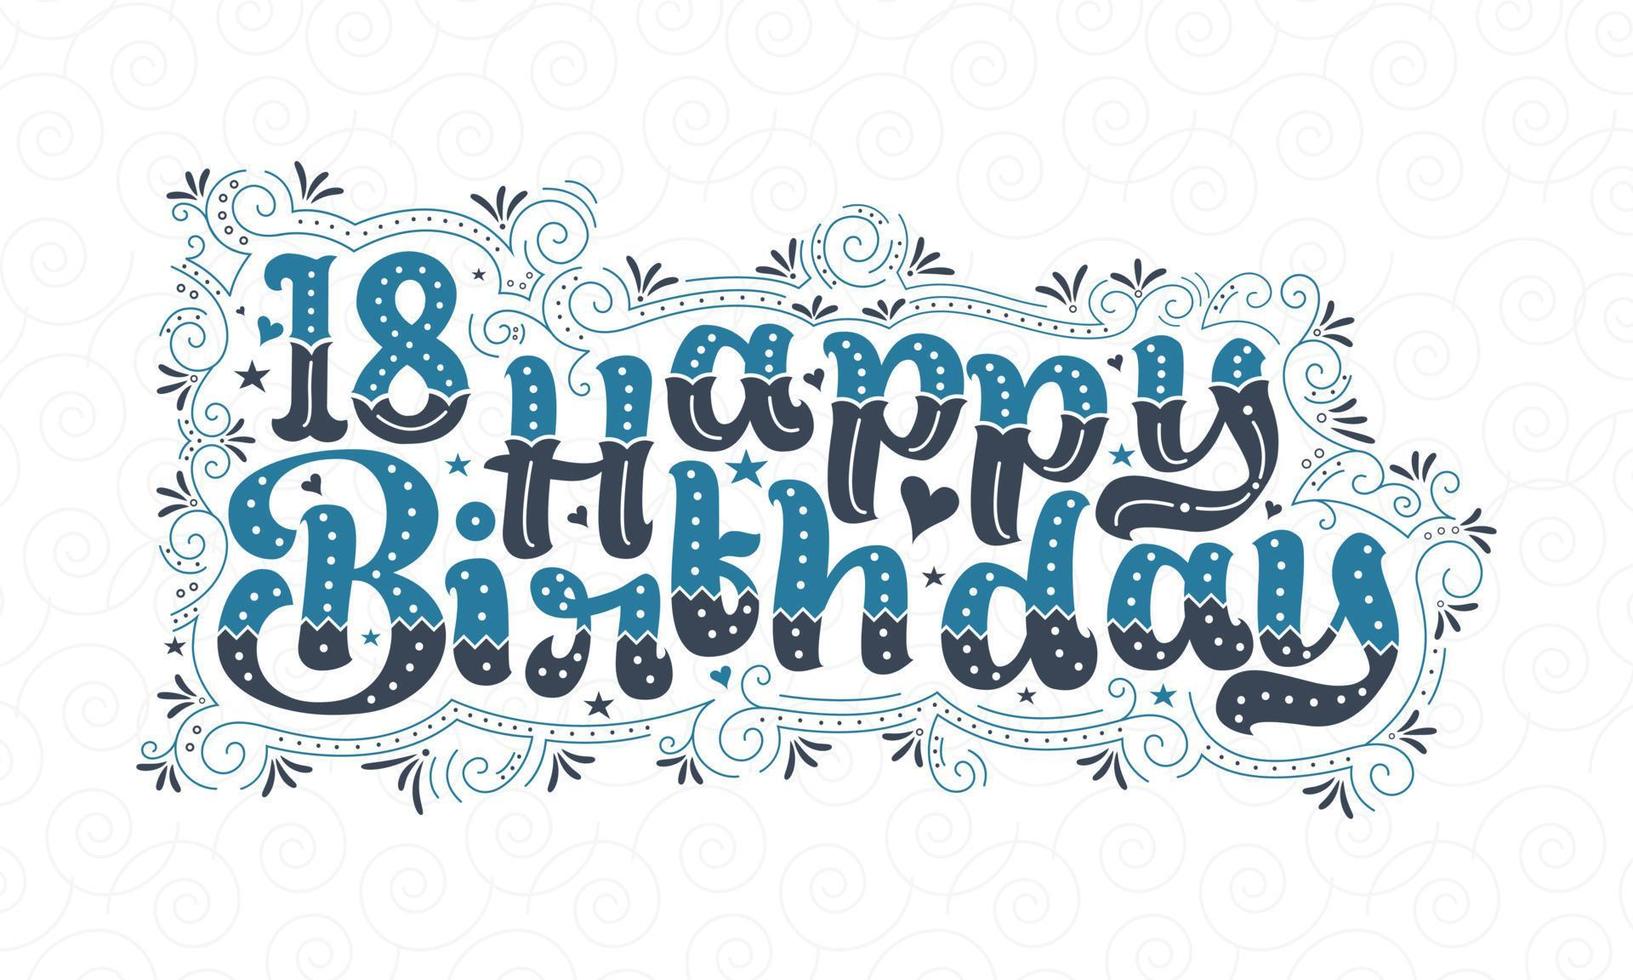 18e gelukkige verjaardag belettering, 18 jaar verjaardag mooi typografieontwerp met blauwe en zwarte stippen, lijnen en bladeren. vector